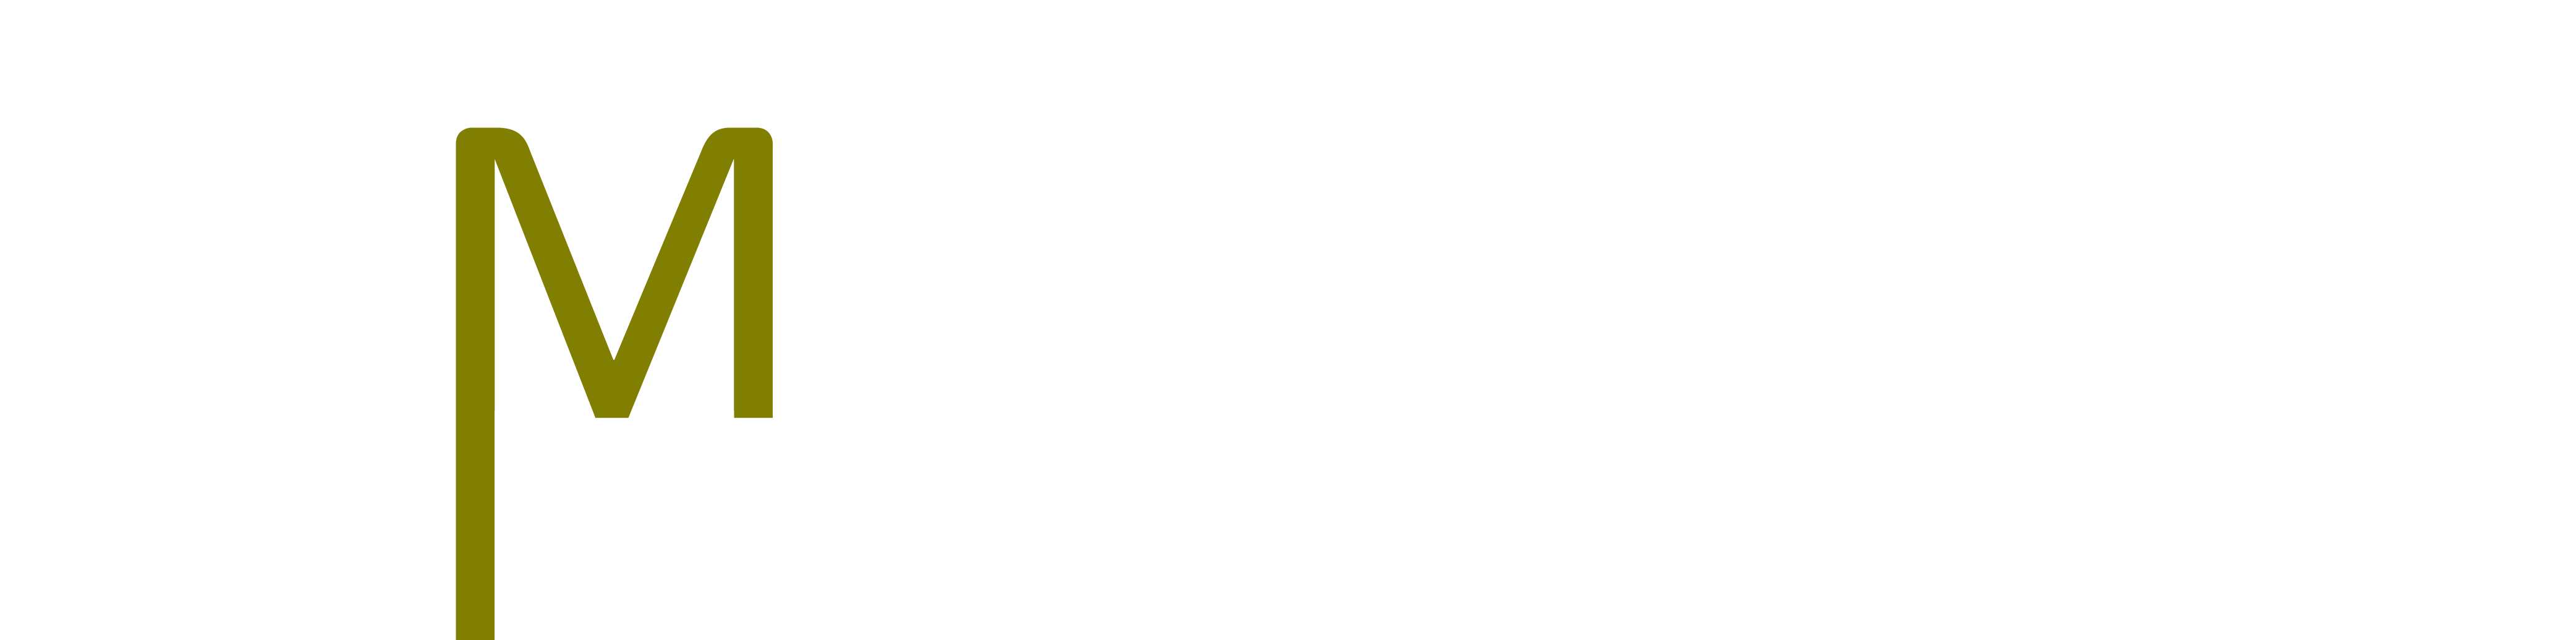 MESMAC construction